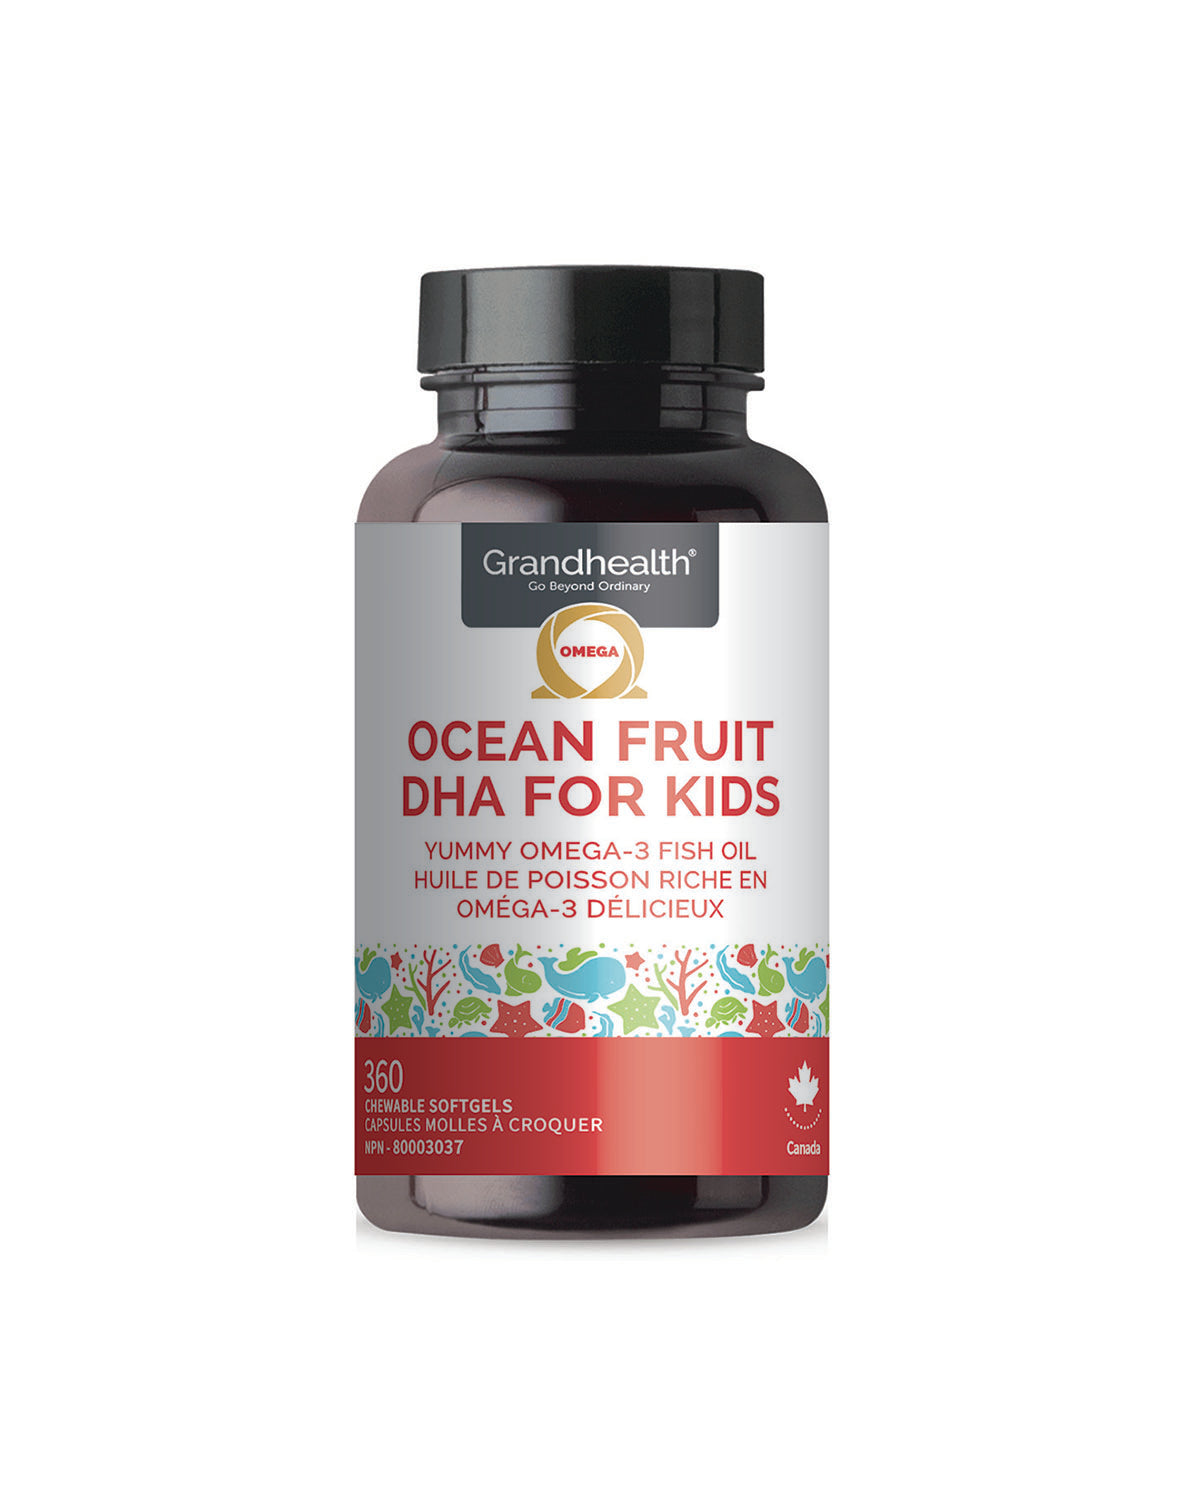 Ocean Fruit DHA for Kids